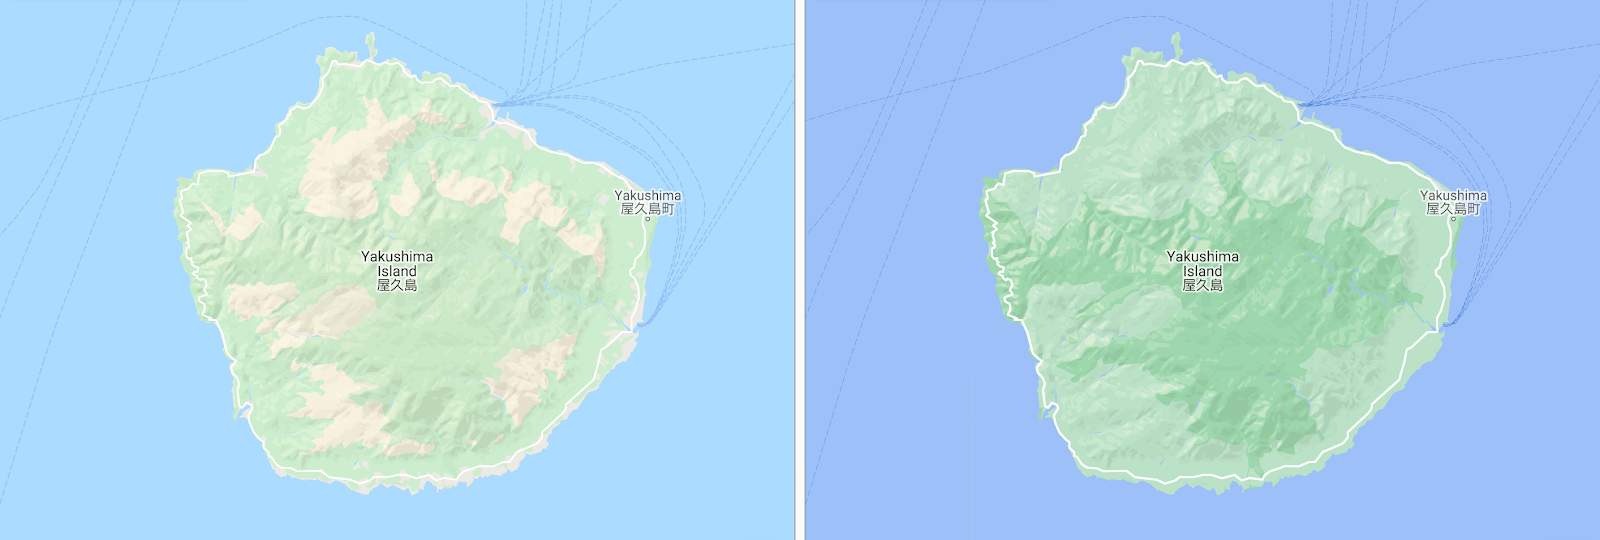 緑がより鮮明になった屋久島の航空地図の画像。